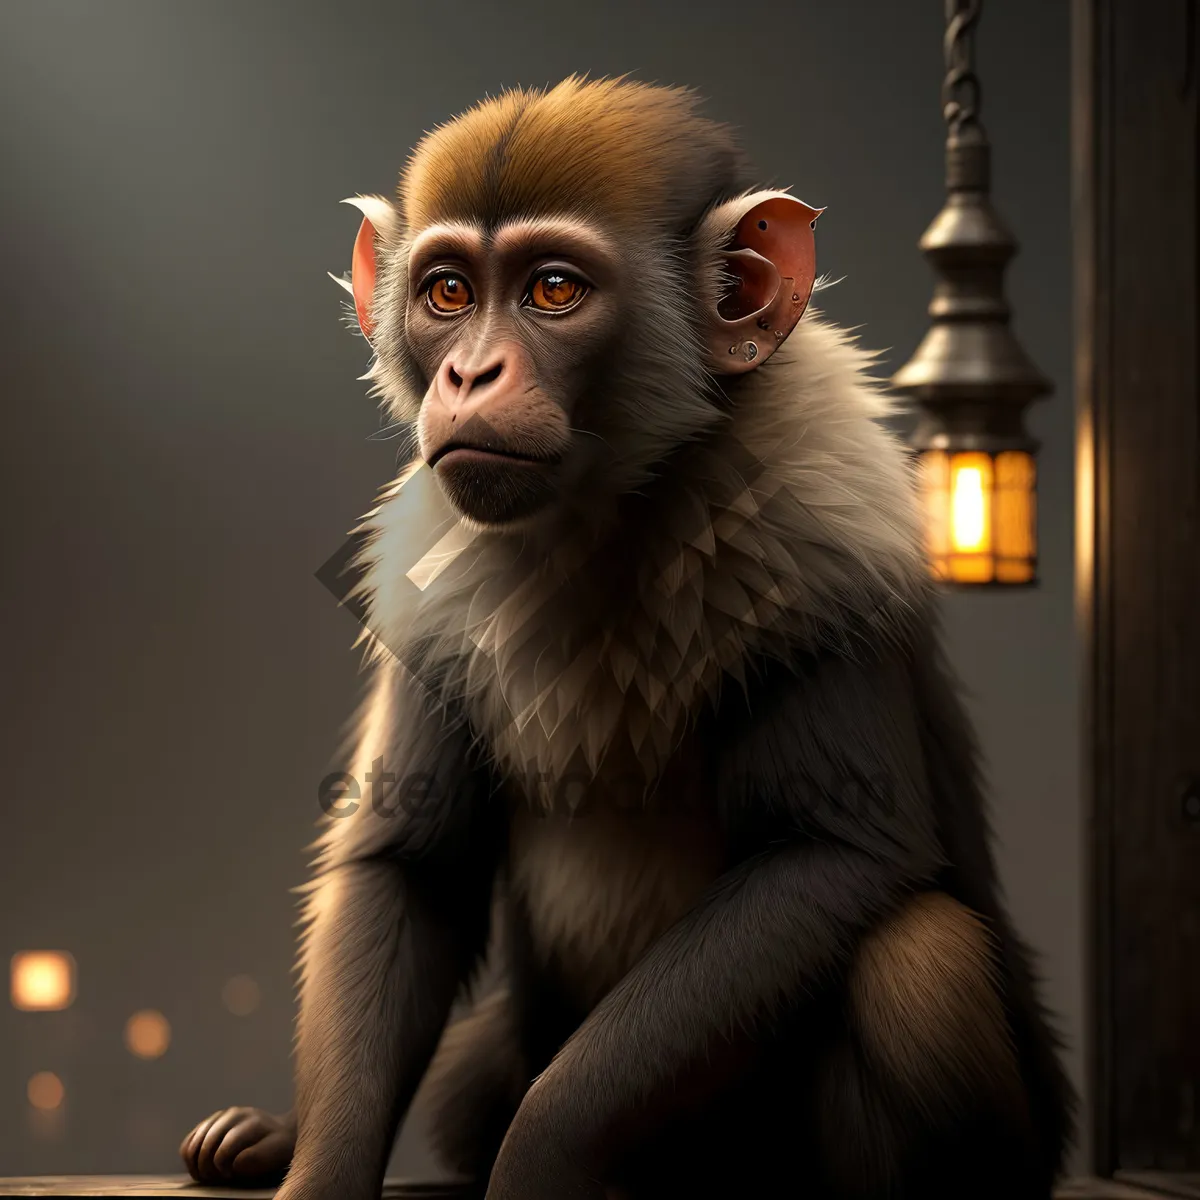 Picture of Wild Jungle Primate Portrait: Macaque Monkey Ape